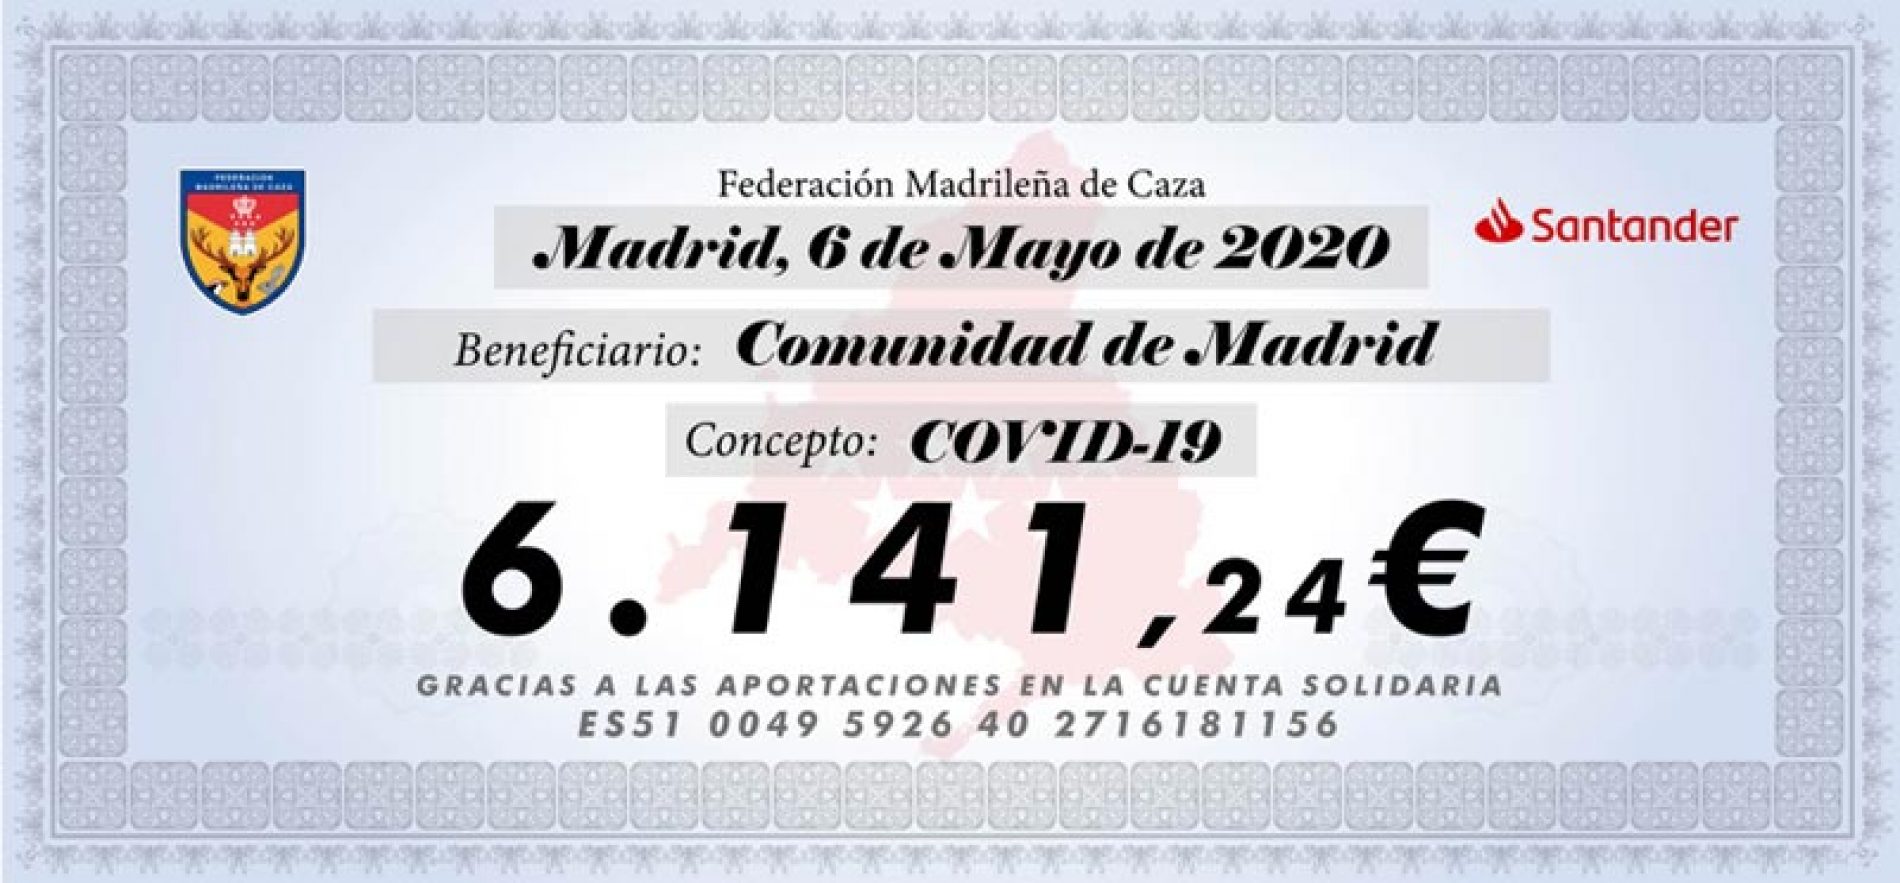 La Federación Madrileña cierra su campaña solidaria contra el COVID-19